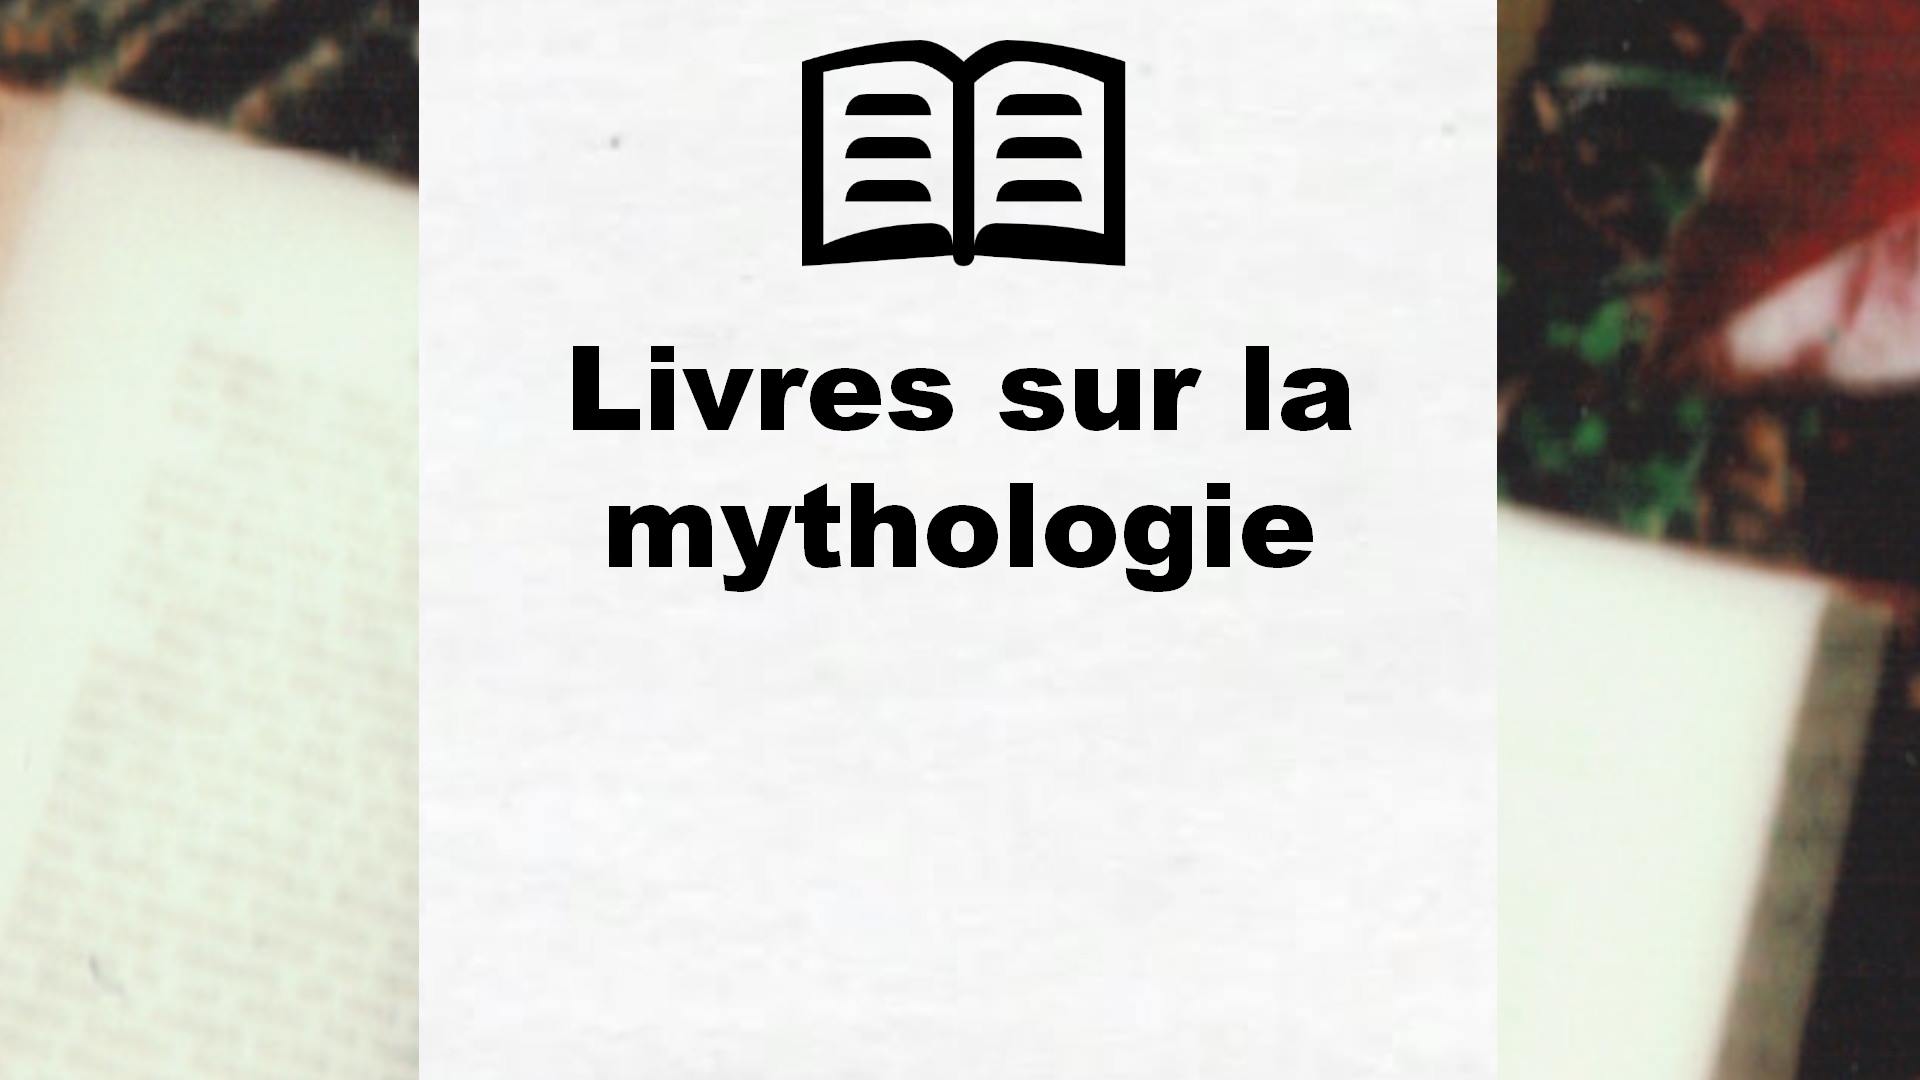 Livres sur la mythologie